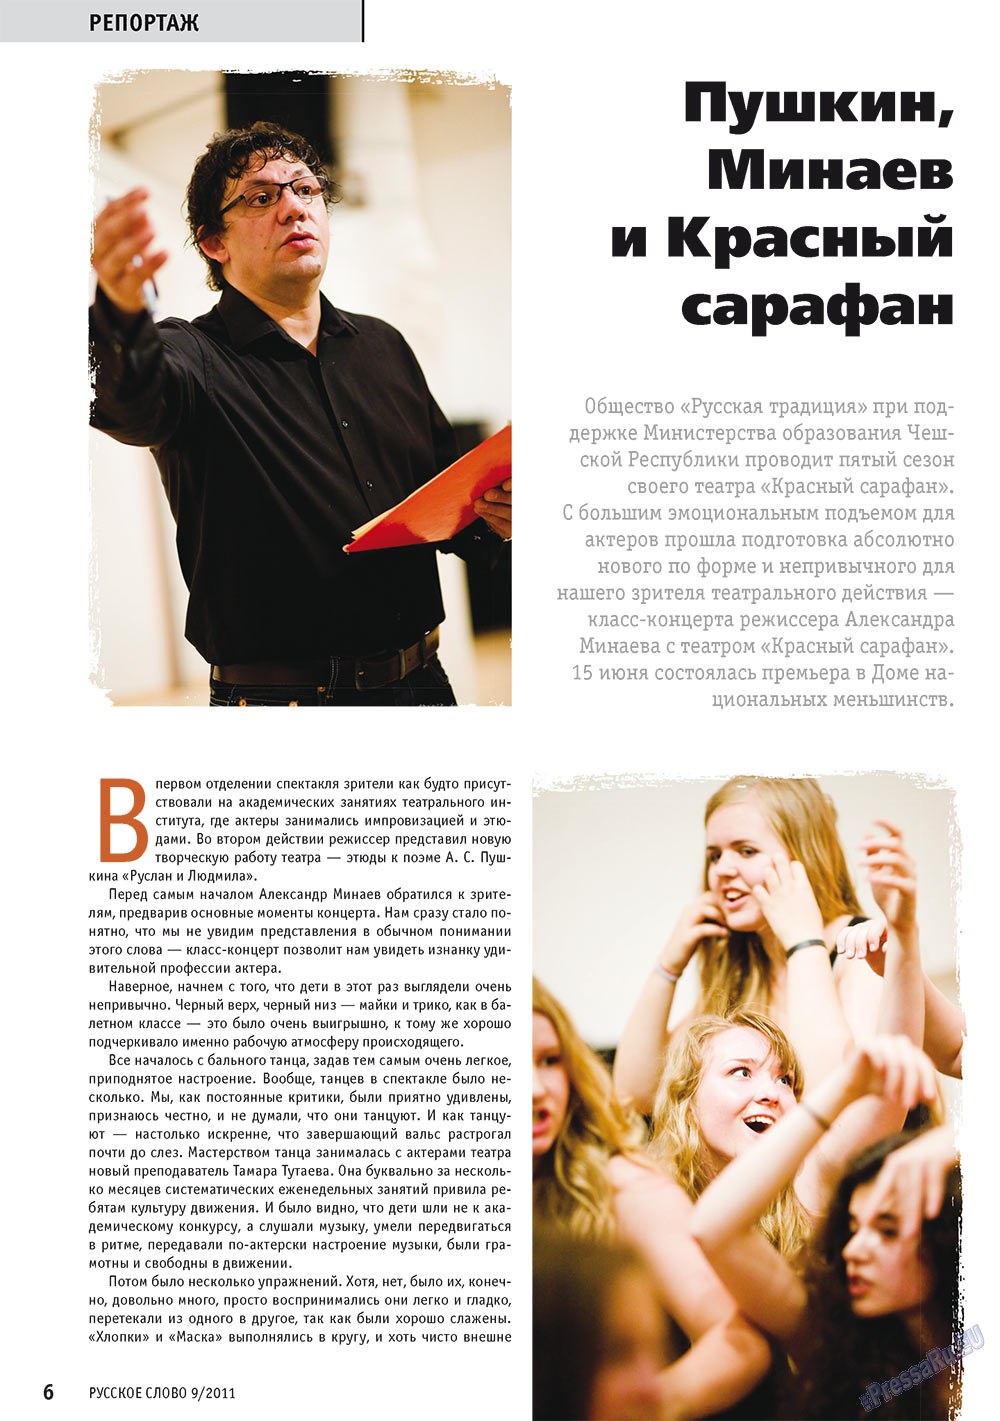 Русское слово, журнал. 2011 №9 стр.8